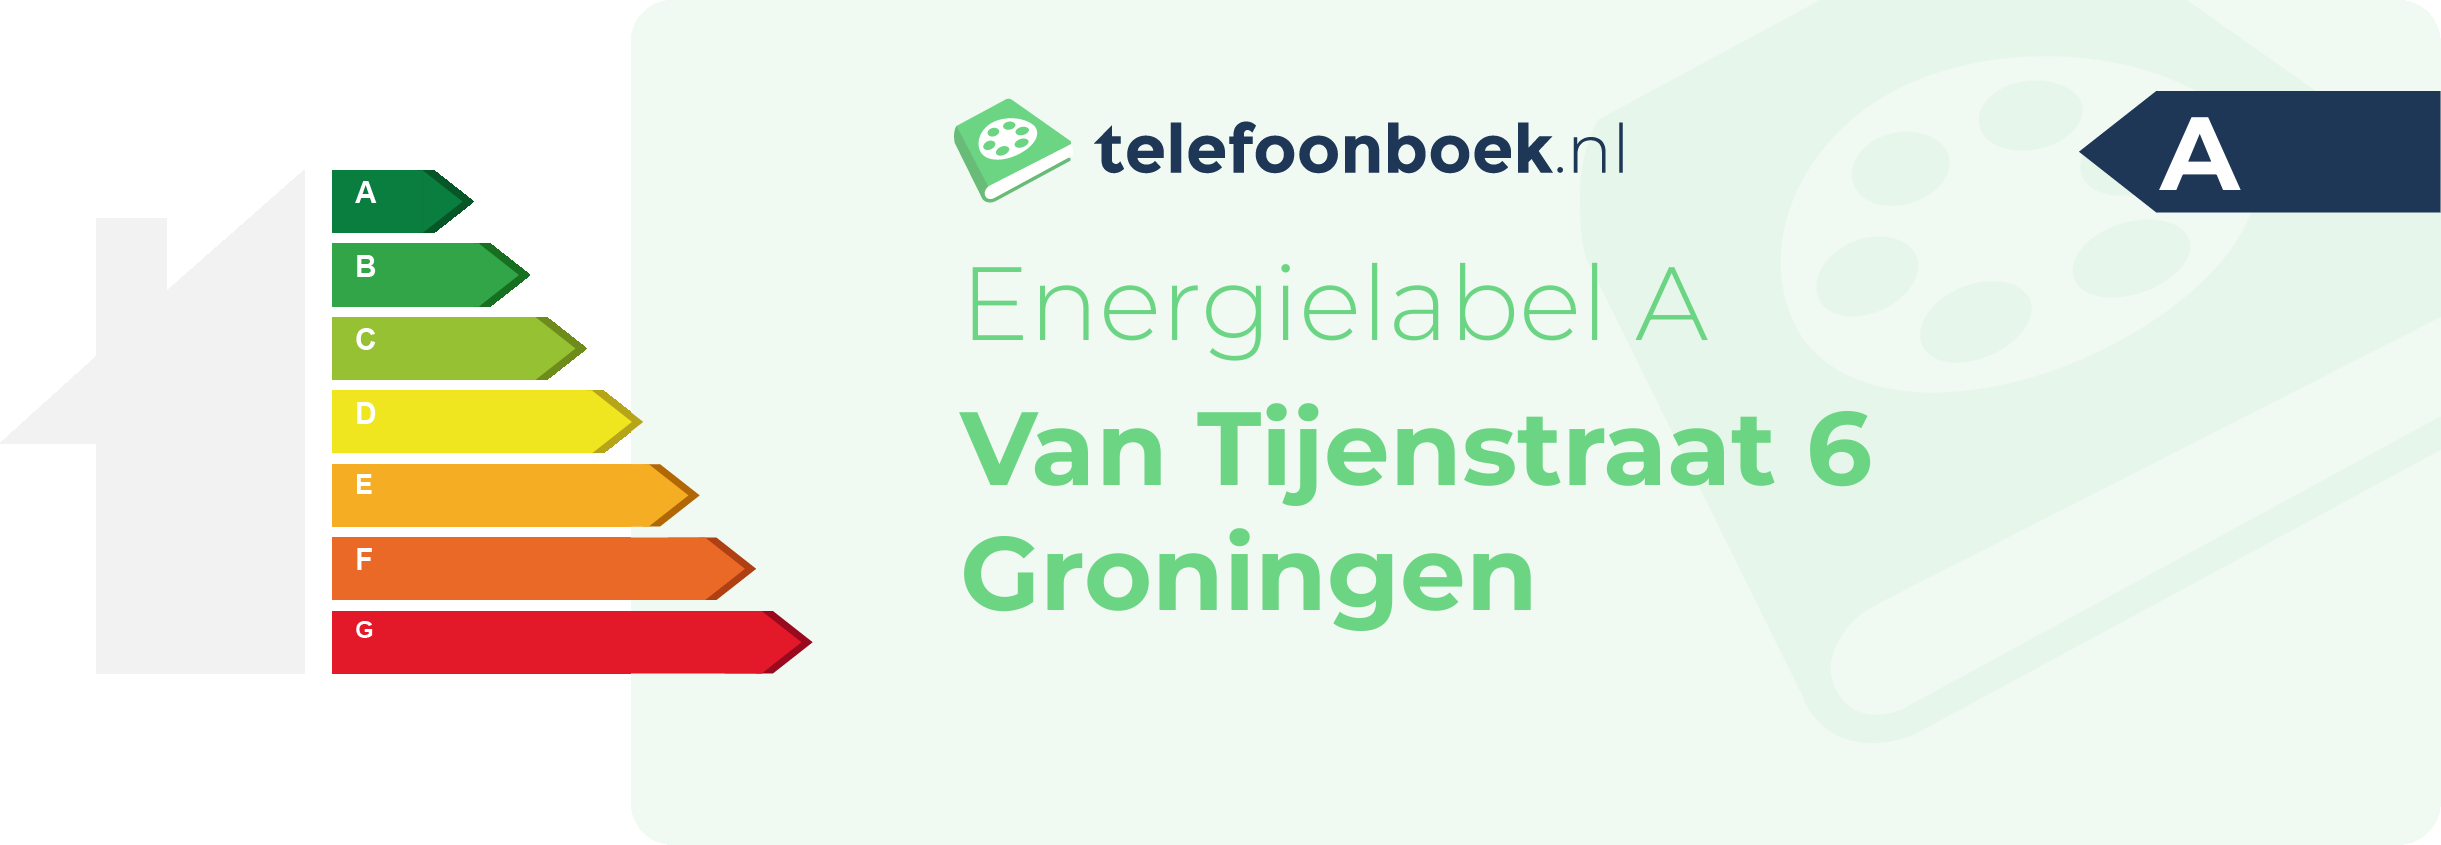 Energielabel Van Tijenstraat 6 Groningen